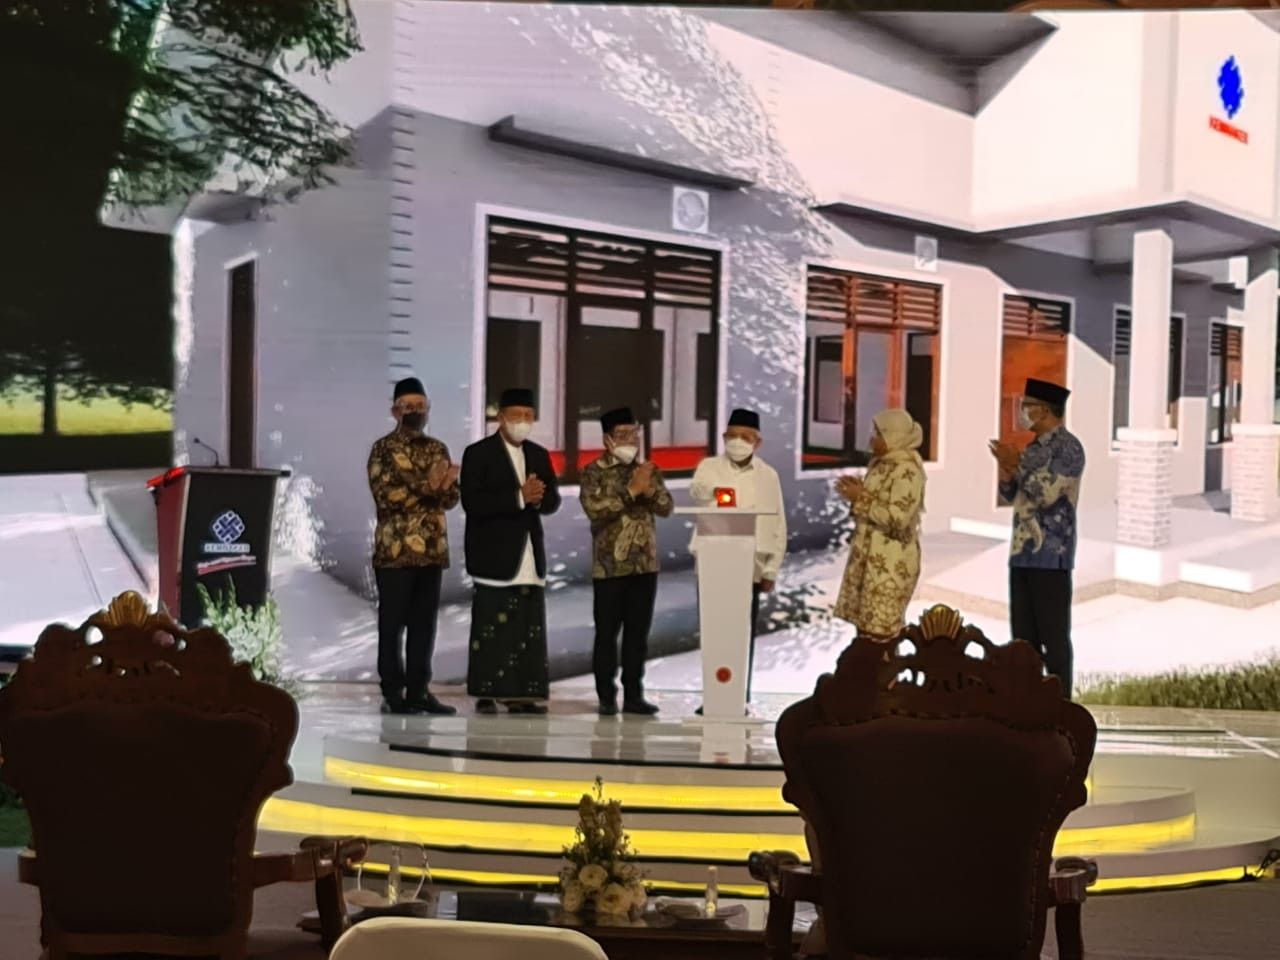 Wakil Presiden Ma'ruf Amin hadir dalam Rembuk Nasional Vokasi dan Kewirausahaan & Peresmian BLK Komunitas (BLKK) Tahun 2020, di Pondok Pesantren Cipasung, Tasikmalaya, Jawa Barat. (Foto: Istimewa)